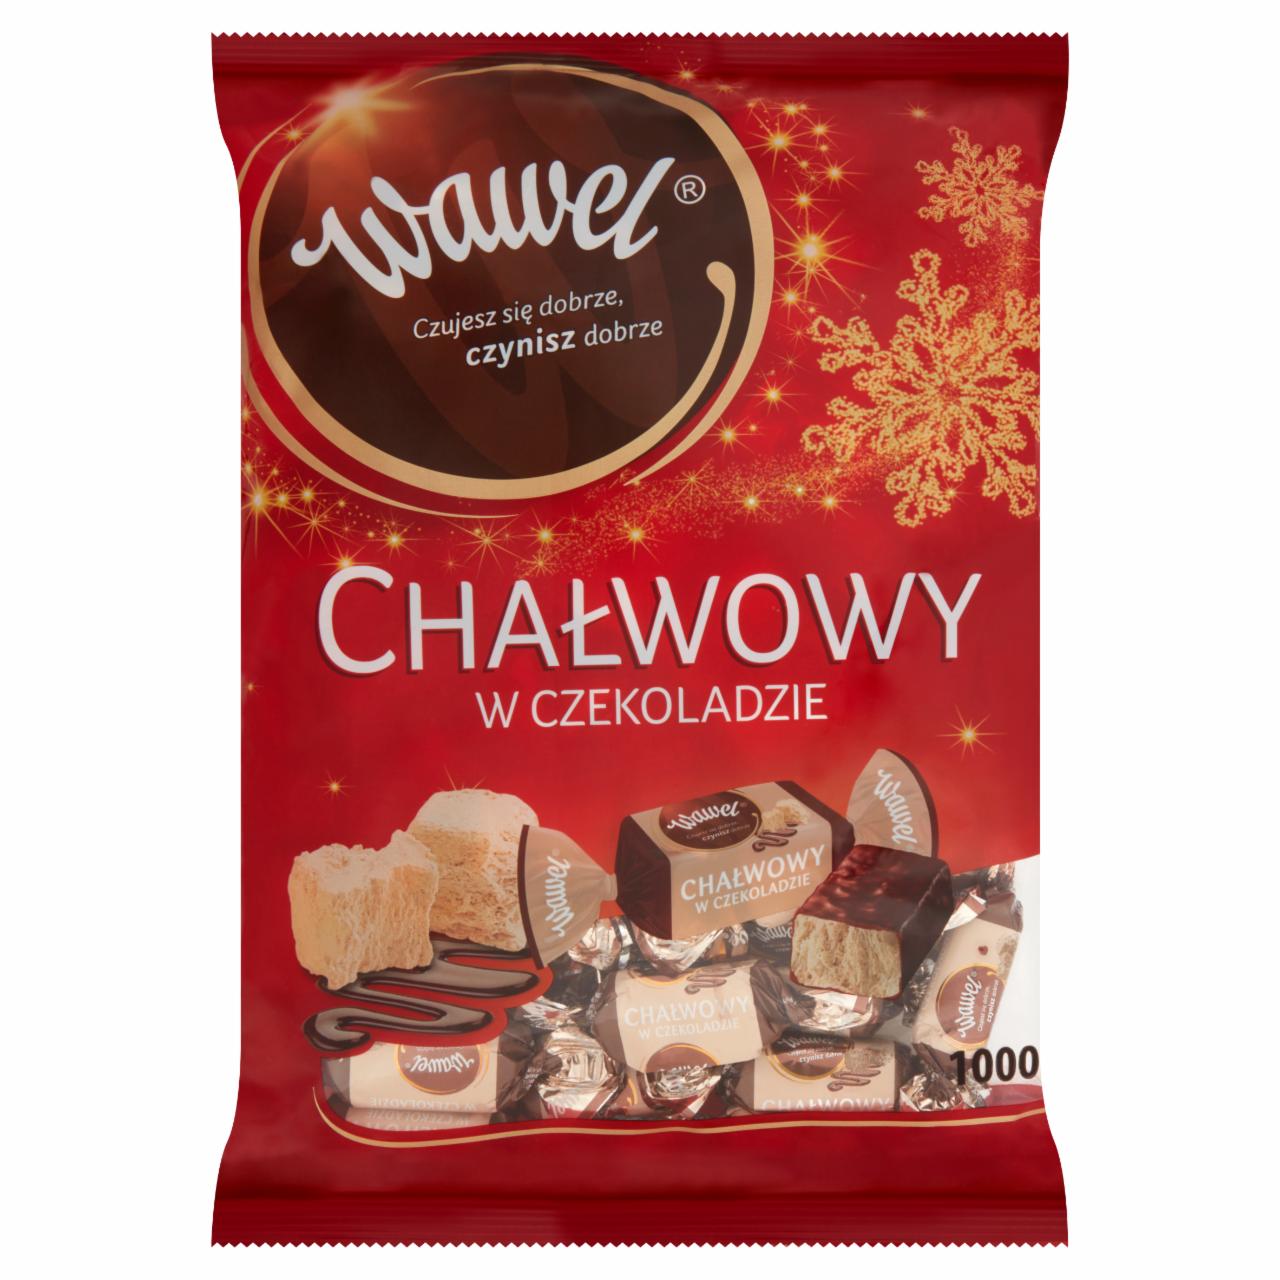 Zdjęcia - Wawel Chałwowy w czekoladzie Cukierki w czekoladzie 1000 g